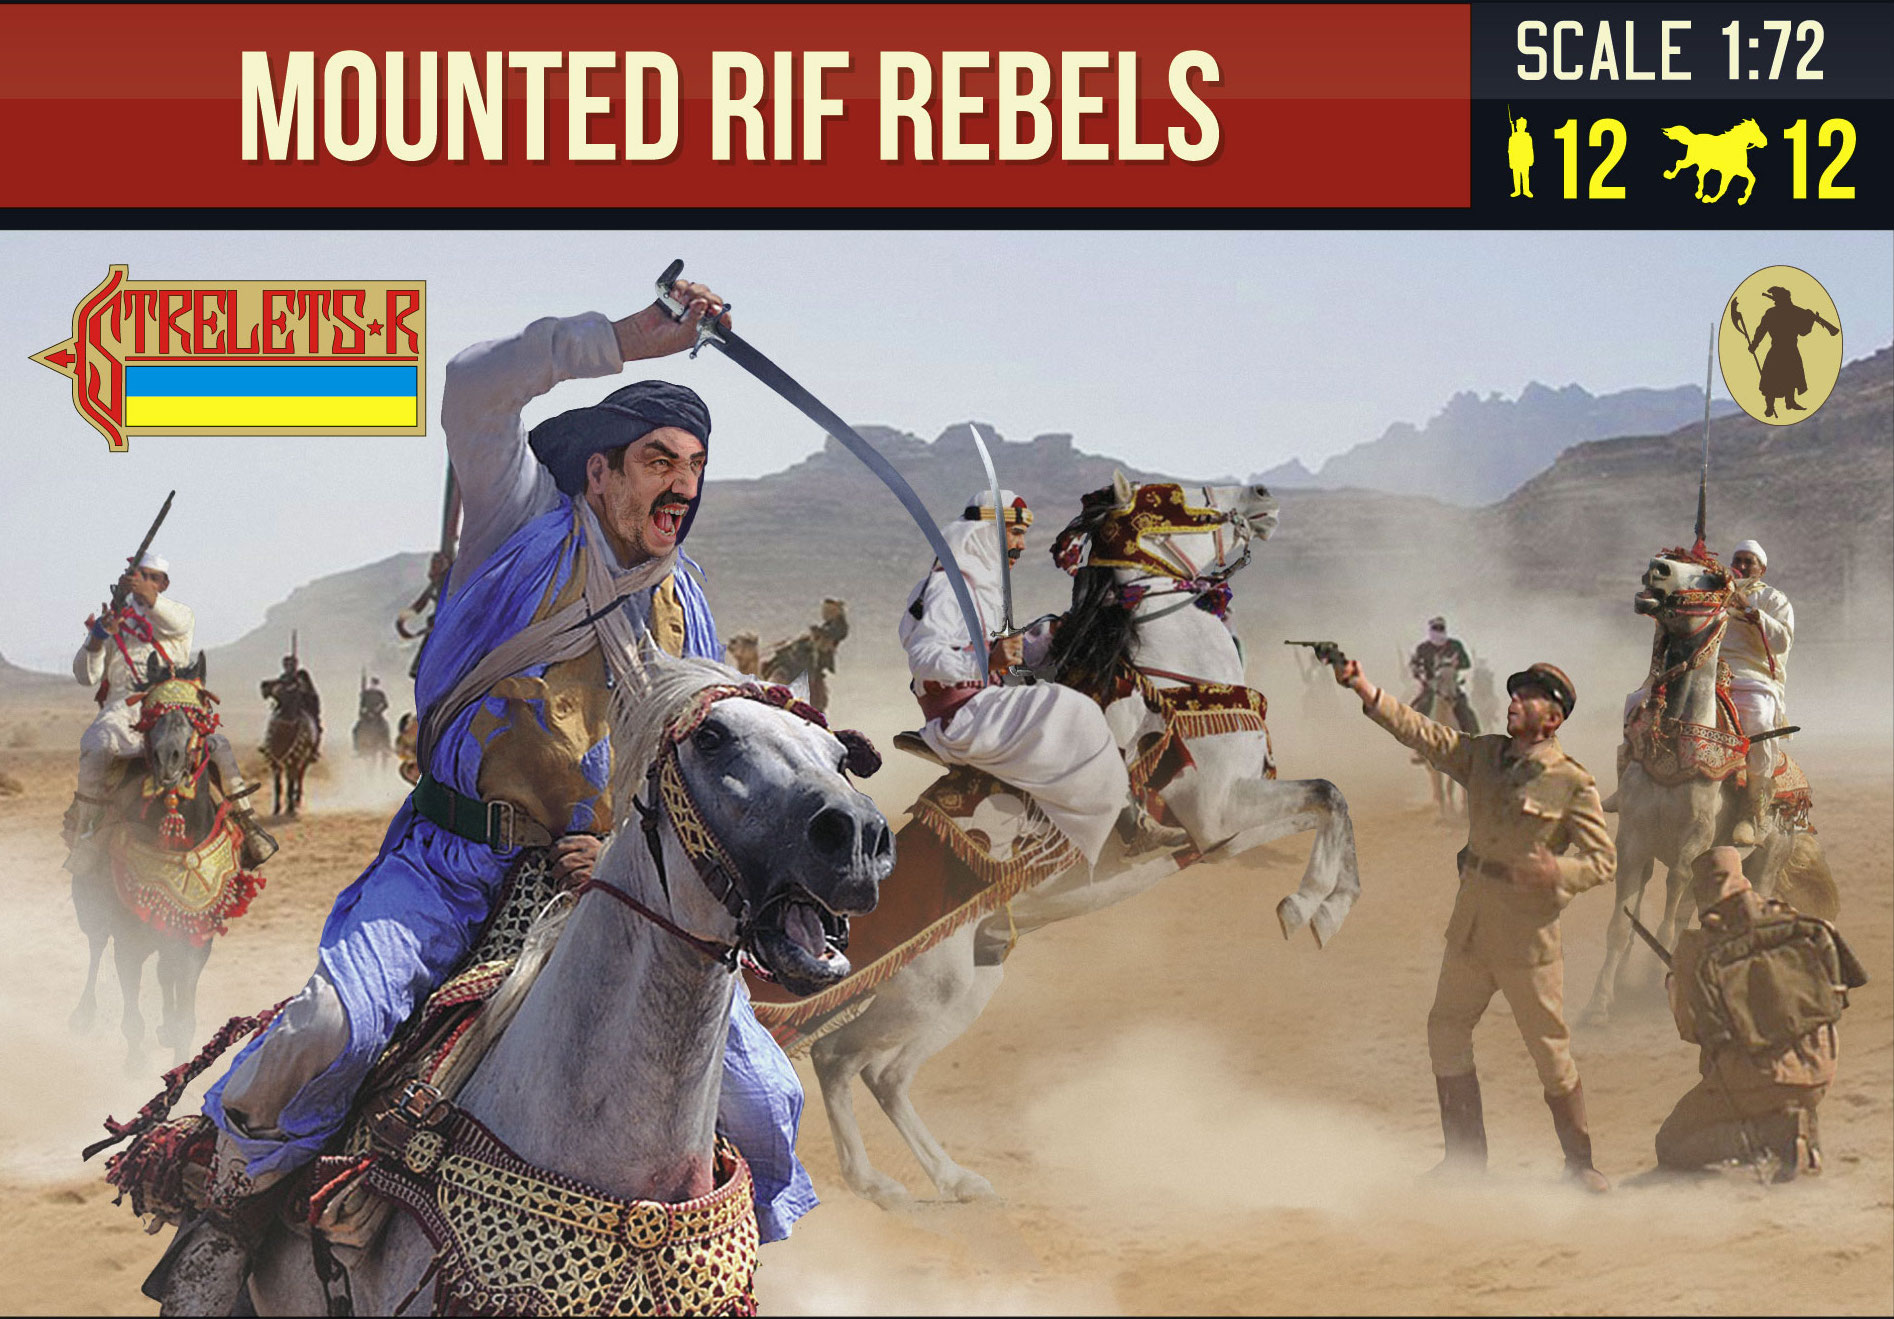 Rif War Mounted Rebels